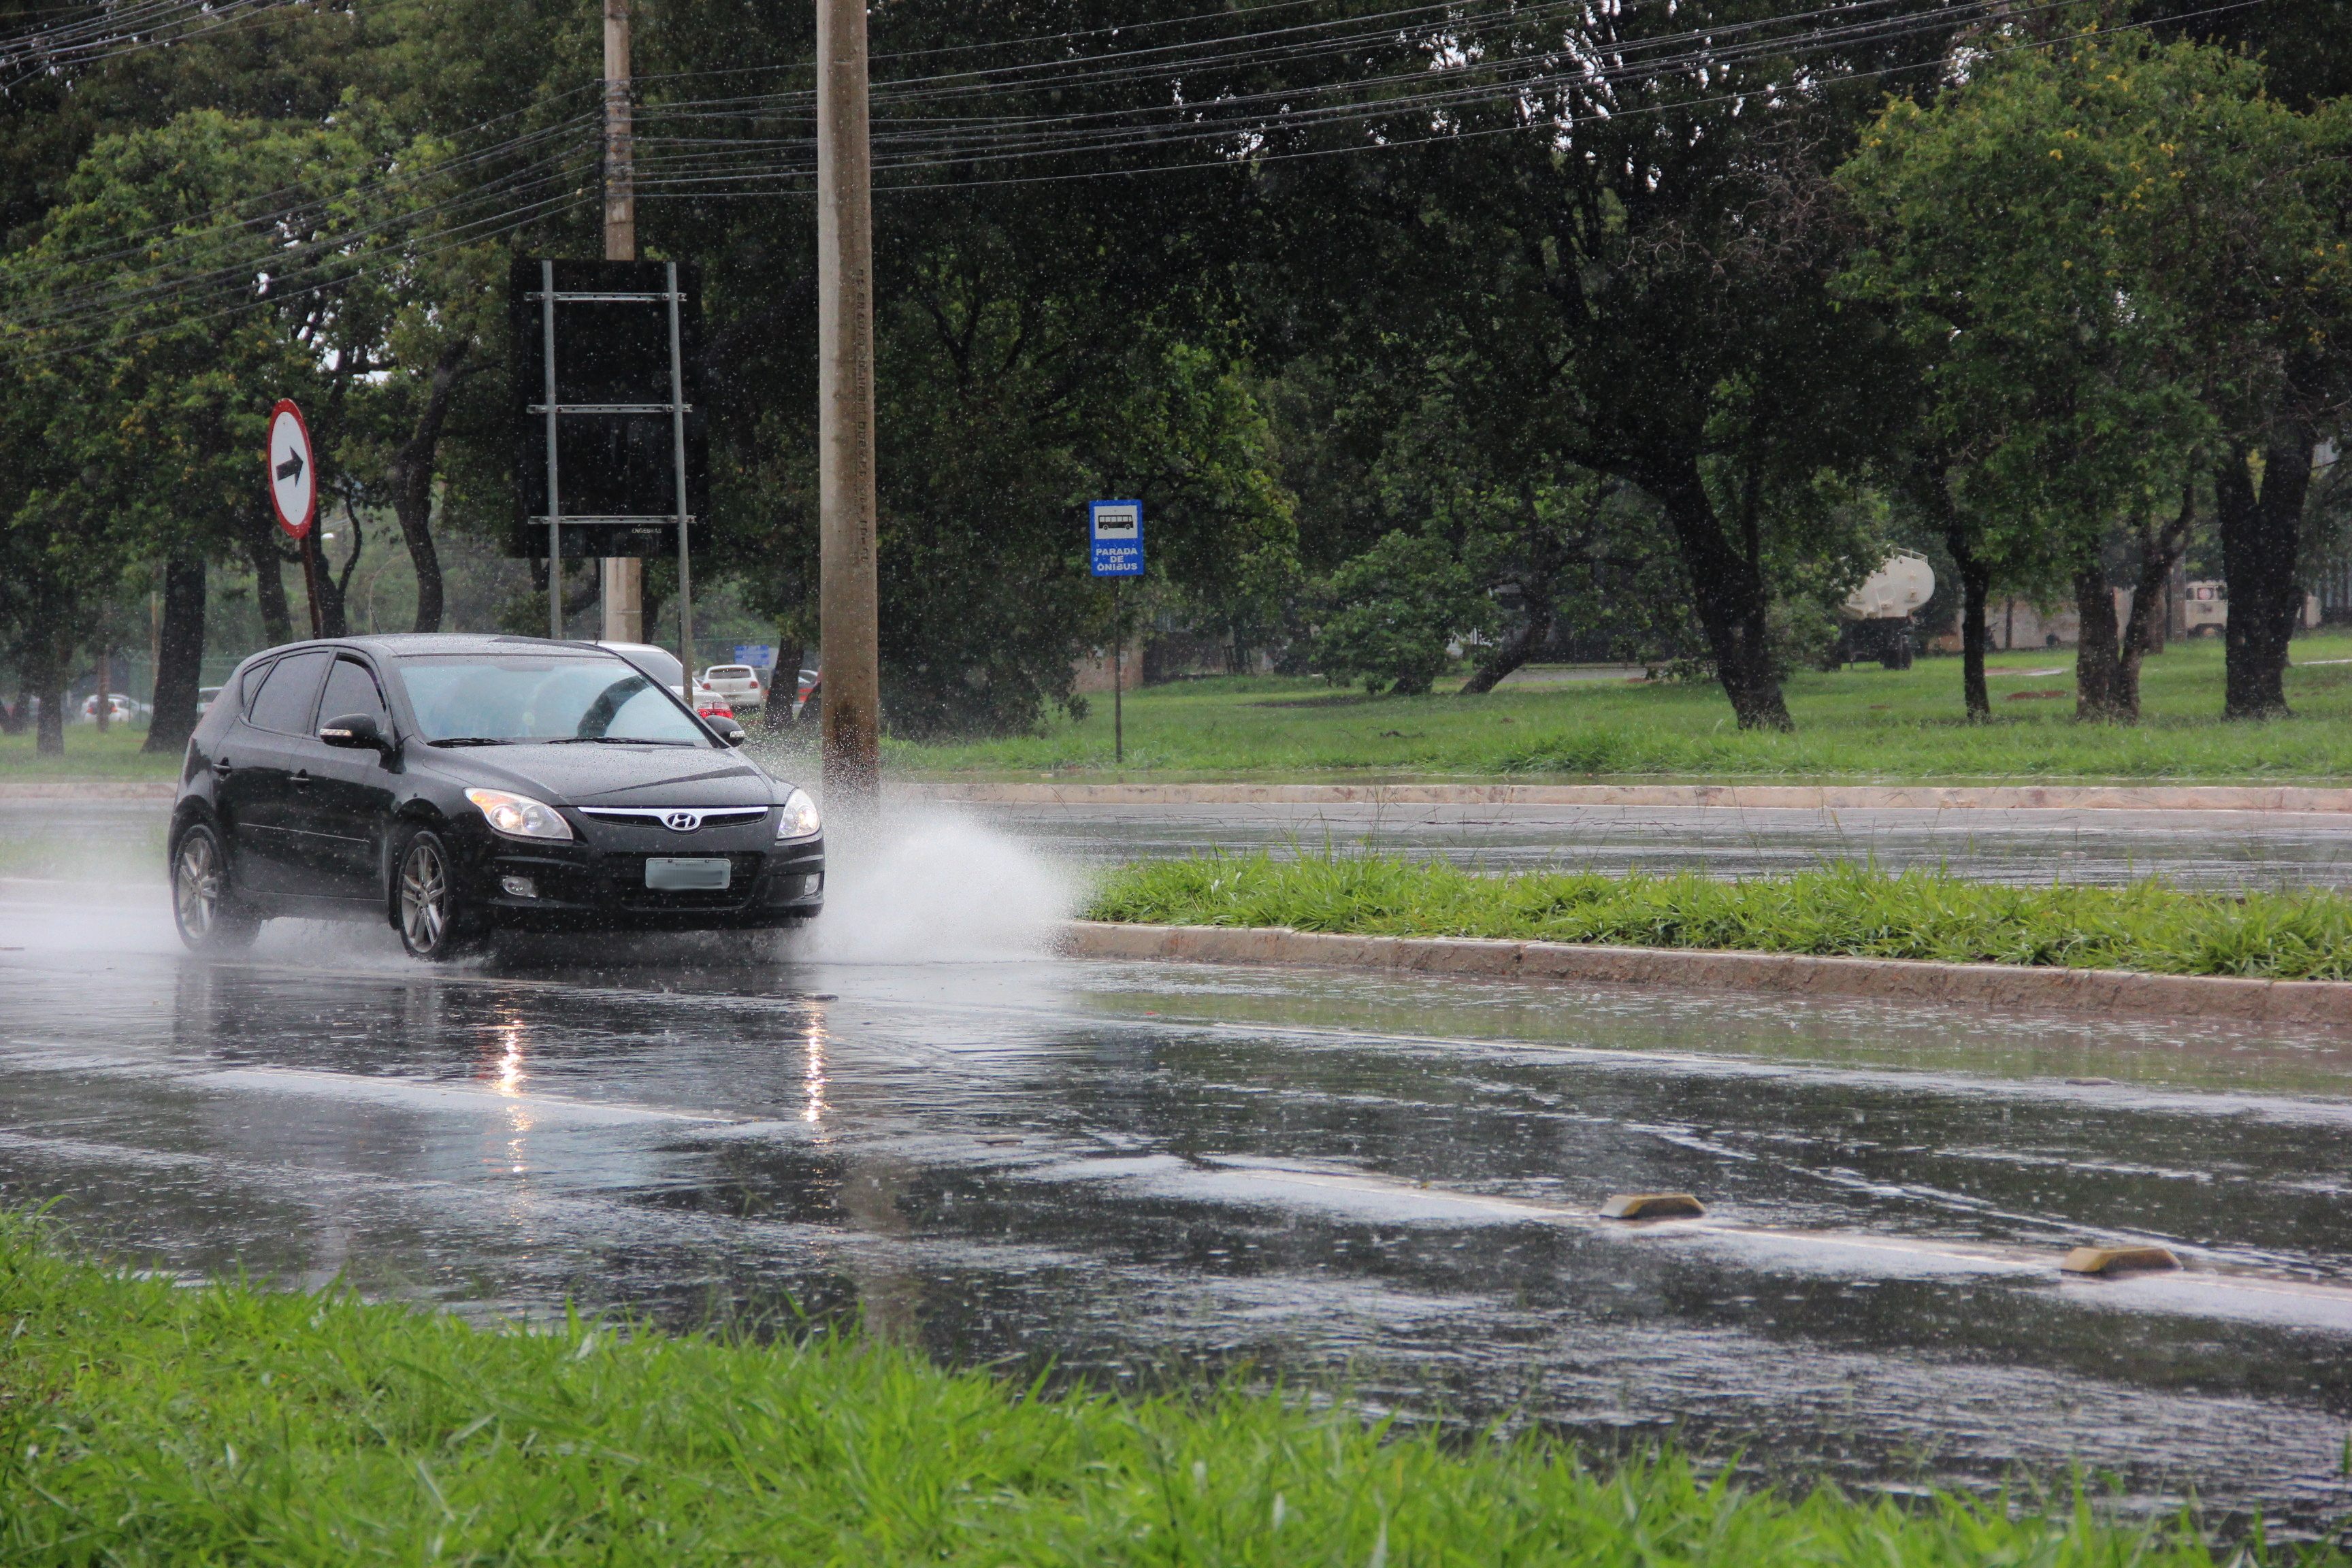 Atenção ao conduzir deve ser redobrada durante a temporada chuvosa | Foto: Vanessa Olinto/Detran